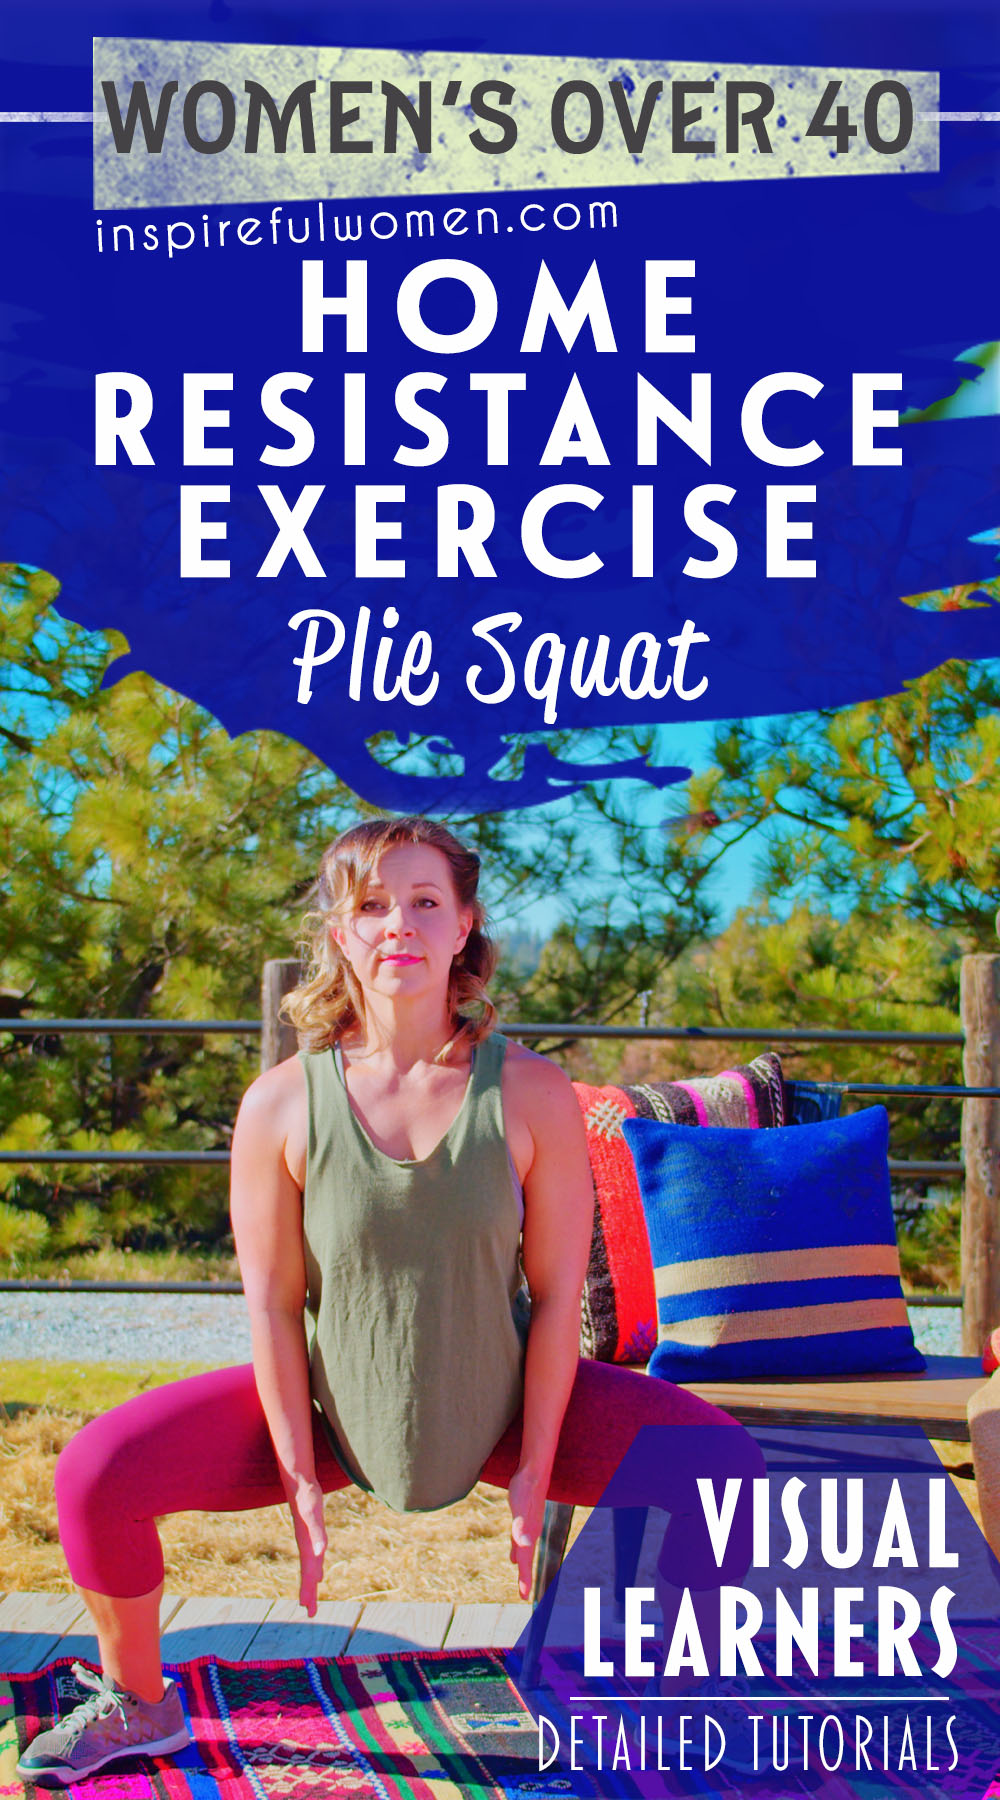 plie-squat-sumo-squat-bodyweight-gluteus-maximus-quadriceps-lower-body-exercise-women-40+